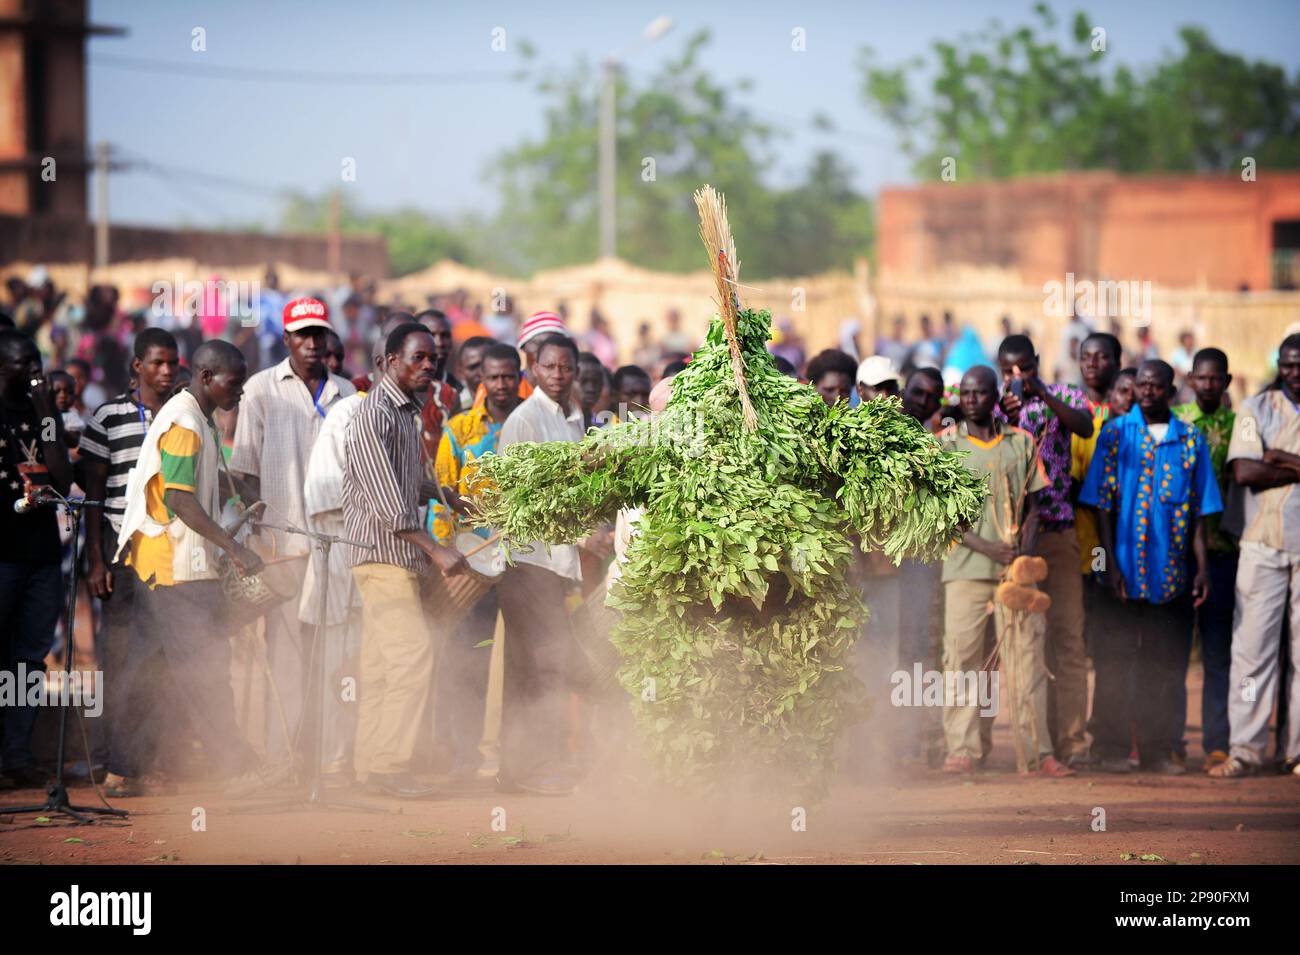 Un masque de feuilles dansant pour les foules au Festival Festima à Dedougou, Burkina Faso Banque D'Images